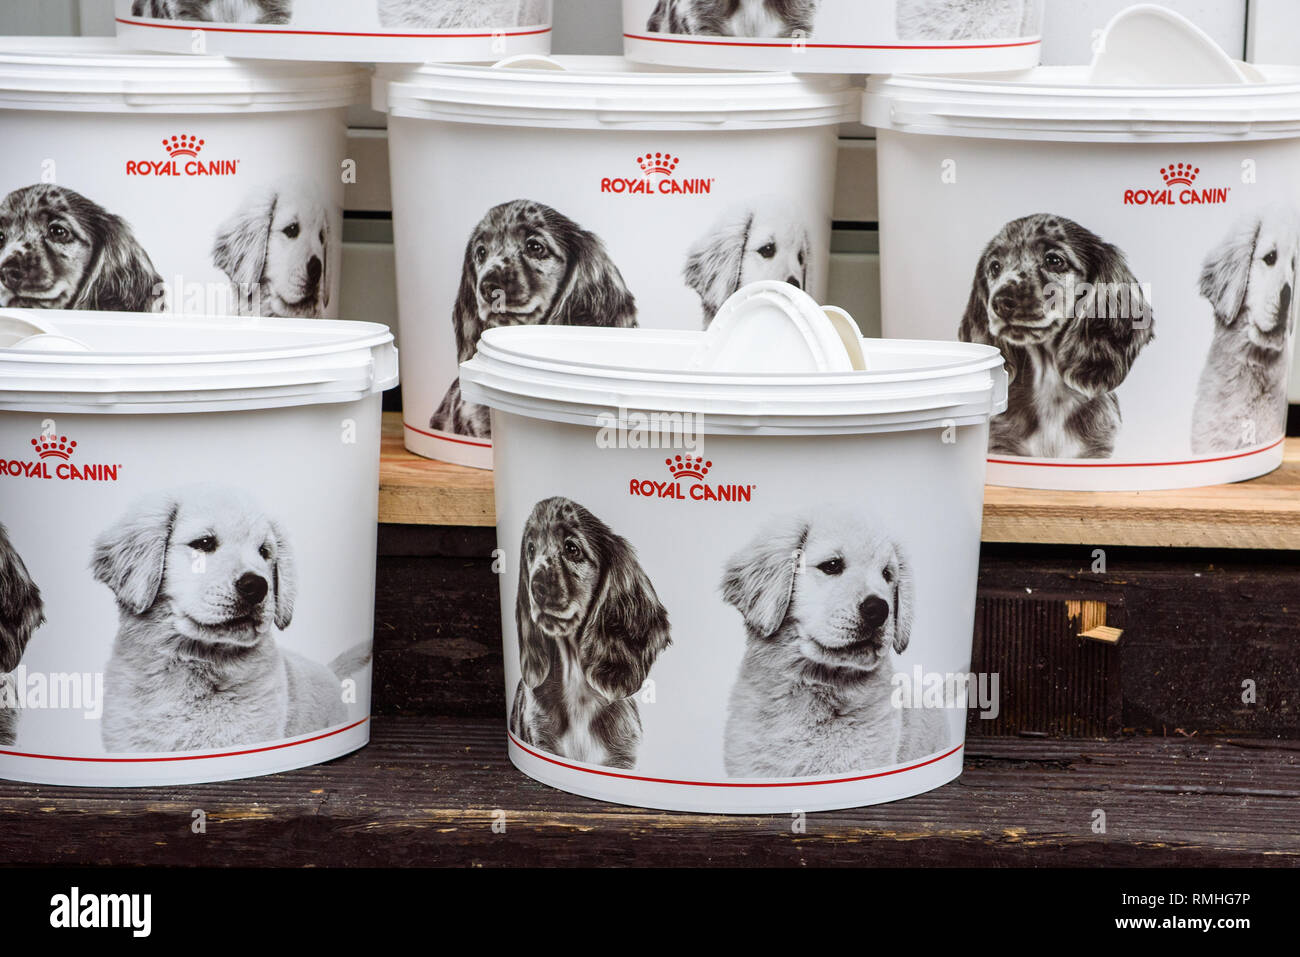 09.12.2018. RIGA, Lettonia. Secchielli in plastica di Royal Canin cane marca del cibo. Foto Stock